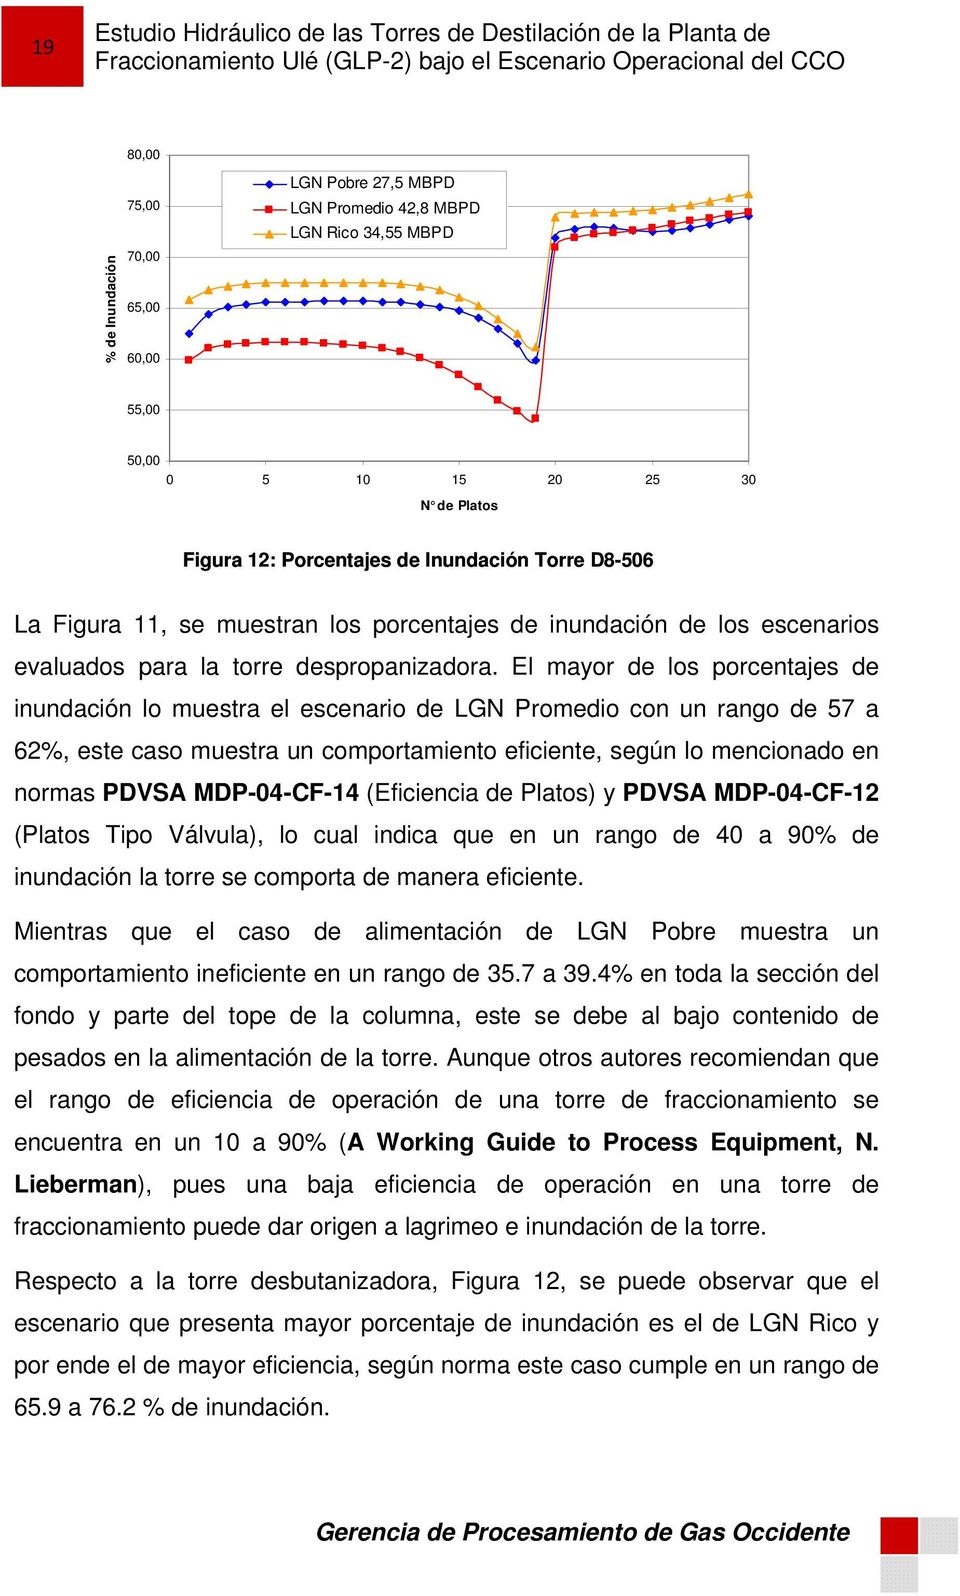 El mayor de los porcentajes de inundación lo muestra el escenario de LGN Promedio con un rango de 57 a 62%, este caso muestra un comportamiento eficiente, según lo mencionado en normas PDVSA